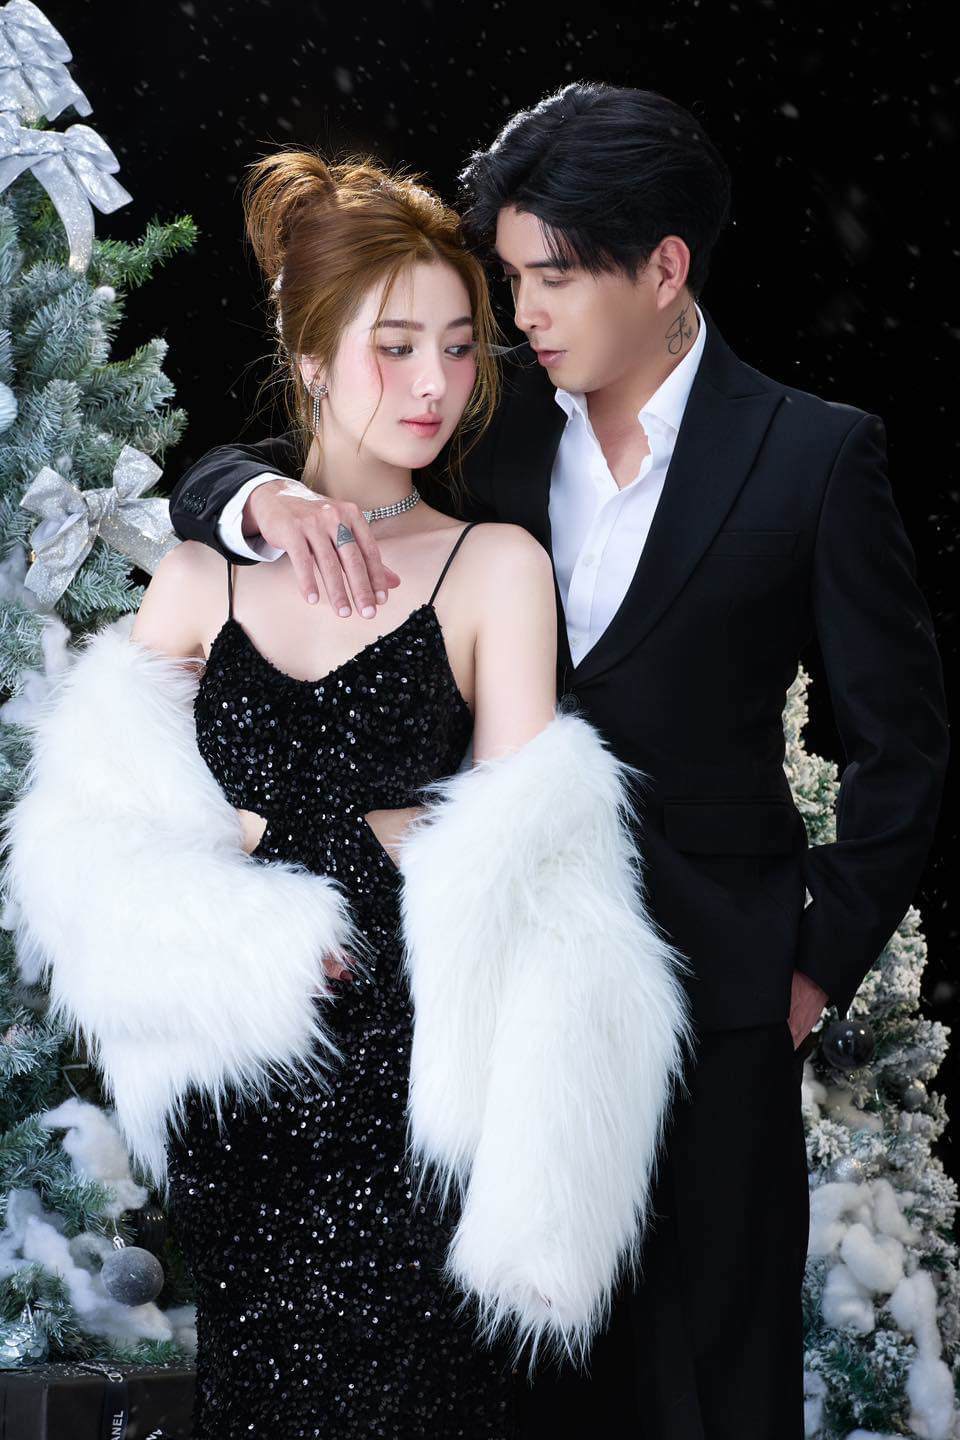 Hồ Quang Hiếu và vợ trong bộ ảnh đón Giáng sinh mới được đăng tải trên trang cá nhân.